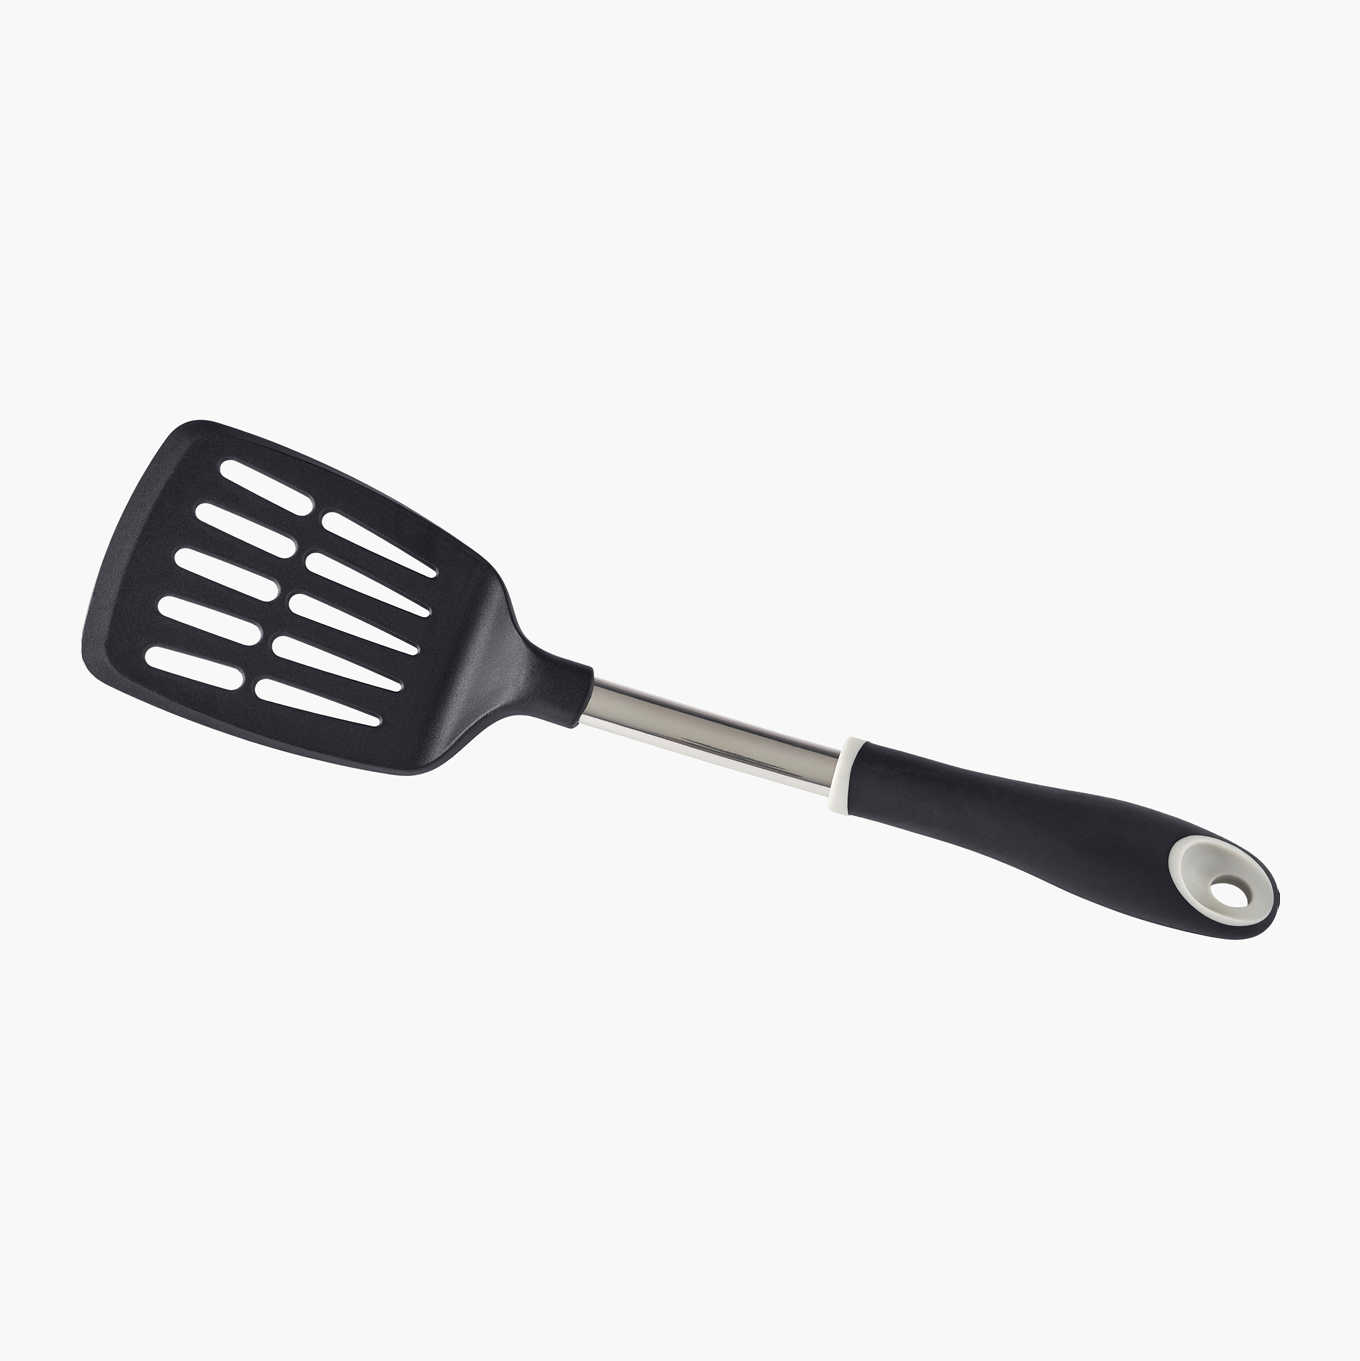 Frying spatula, 34,5 cm 